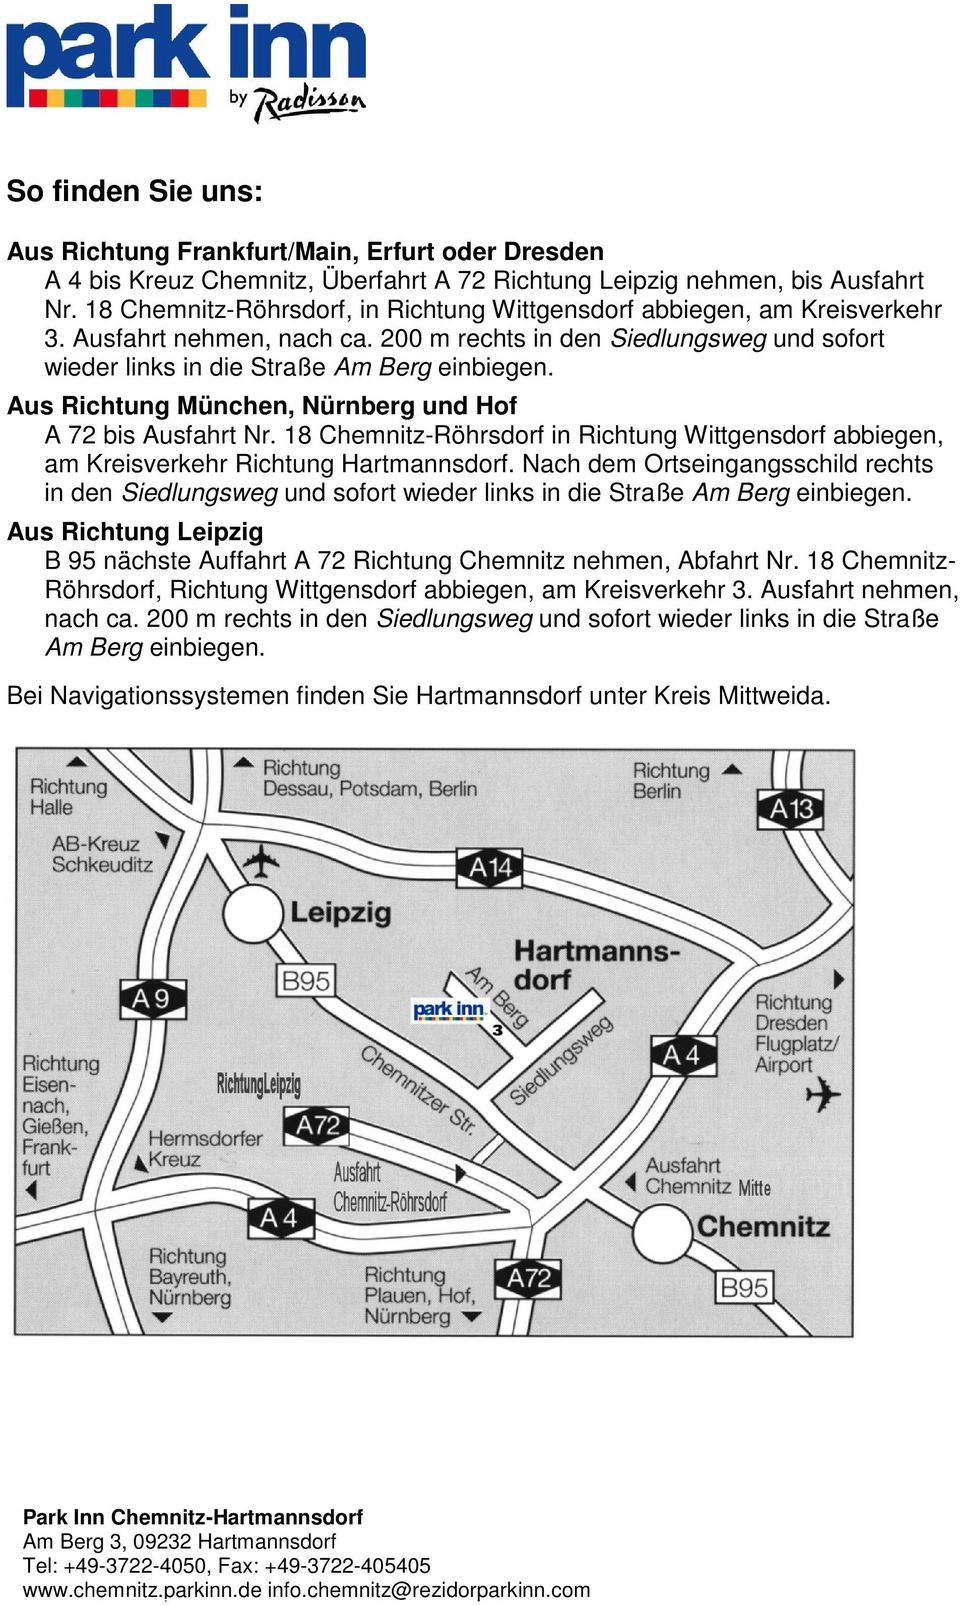 Aus Richtung München, Nürnberg und Hof A 72 bis Ausfahrt Nr. 18 Chemnitz-Röhrsdorf in Richtung Wittgensdorf abbiegen, am Kreisverkehr Richtung Hartmannsdorf.